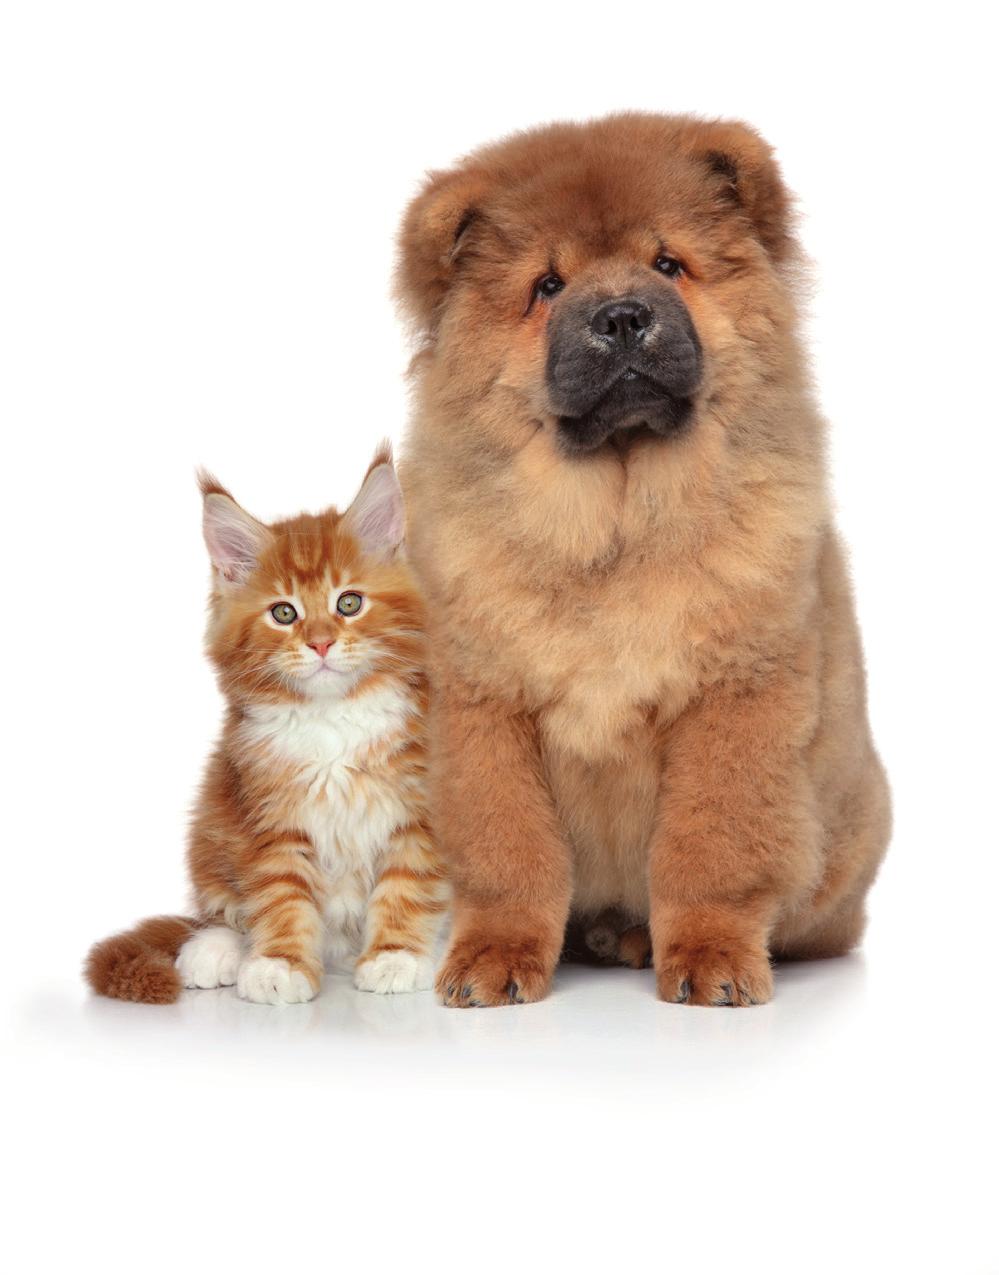 Enteroformula Το PET Enteroformula είναι ένα συμπλήρωμα διατροφής για σκύλους και γάτες σχεδιασμένο να αντιμετωπίζει αποτελεσματικά τις γαστρεντερικές διαταραχές που οφείλονται σε απότομες αλλαγές